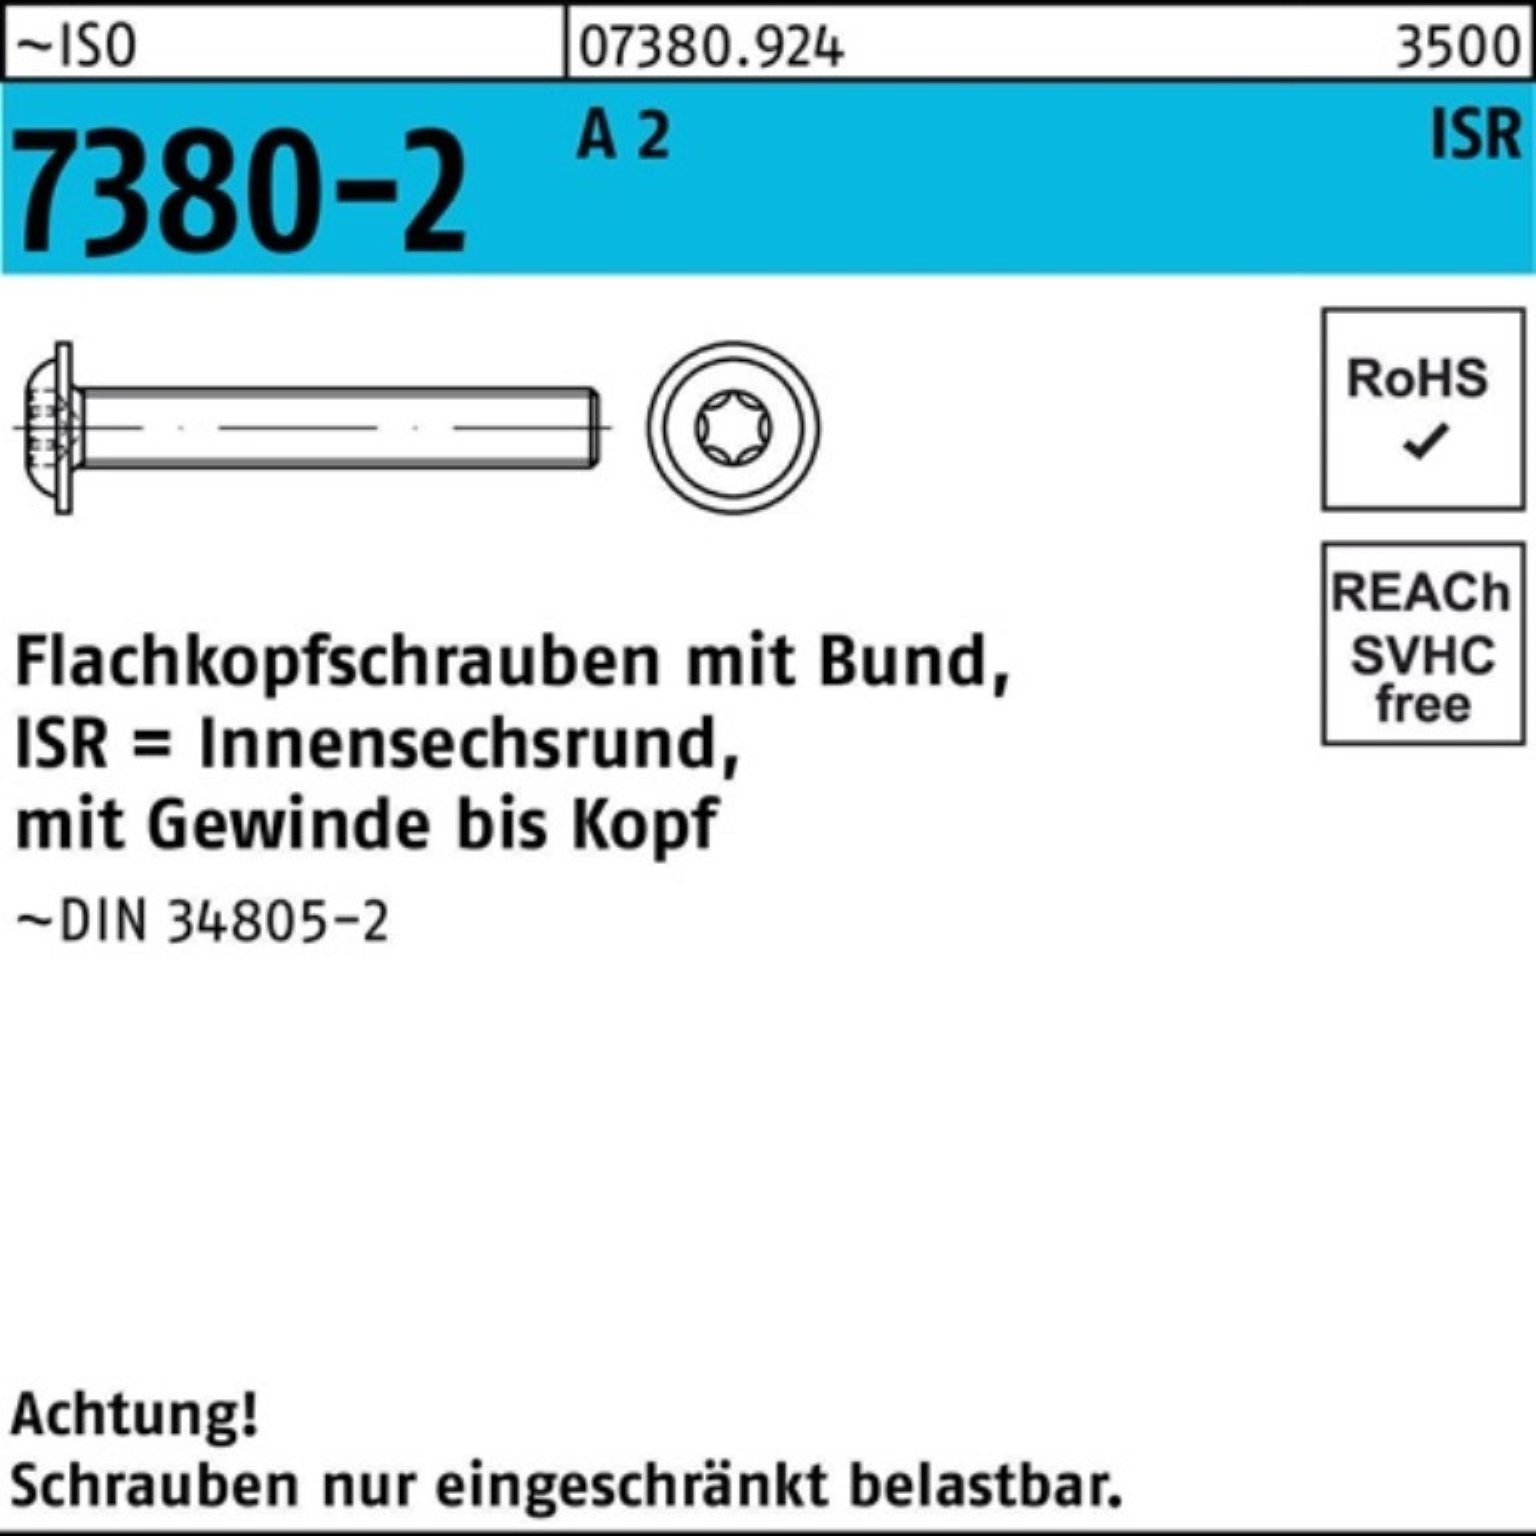 A M5x 200er ISO Bund/ISR Pack Reyher Schraube VG 45-T25 2 7380-2 Flachkopfschraube 200